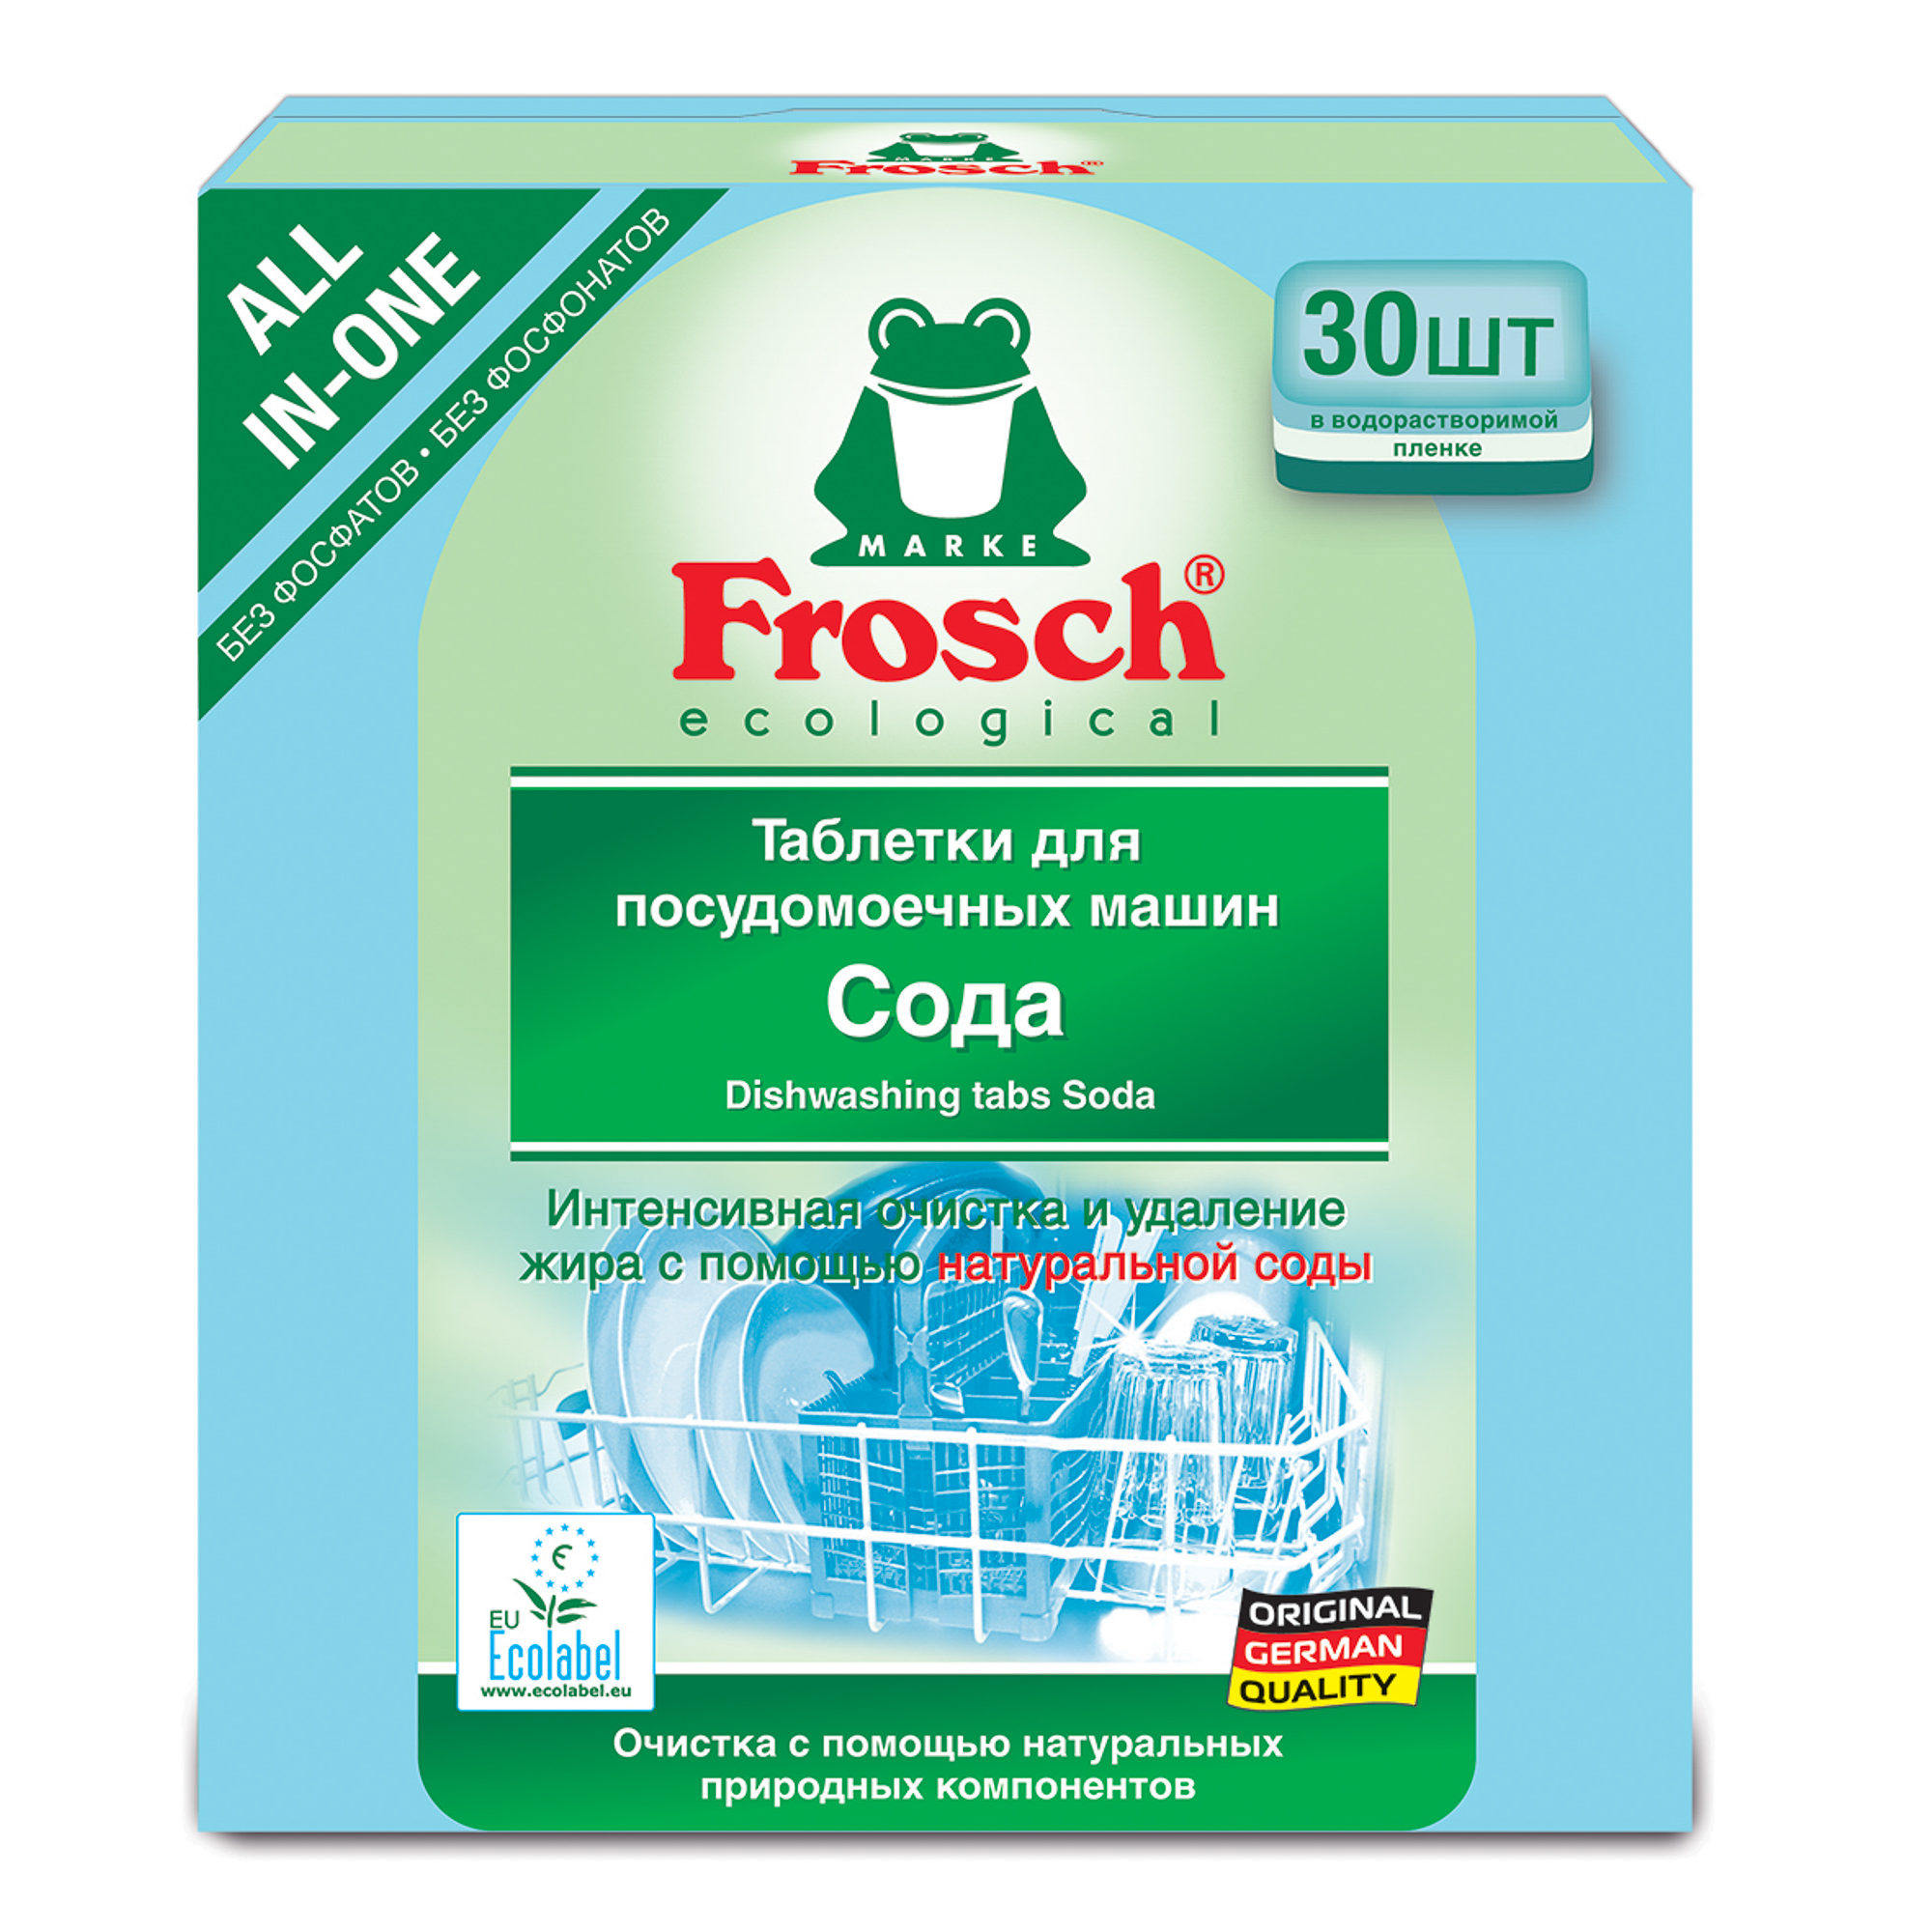 Таблетки Frosch Все в Одном для мытья посуды 30 шт таблетки для посудомоечных машин bioretto bio 28шт